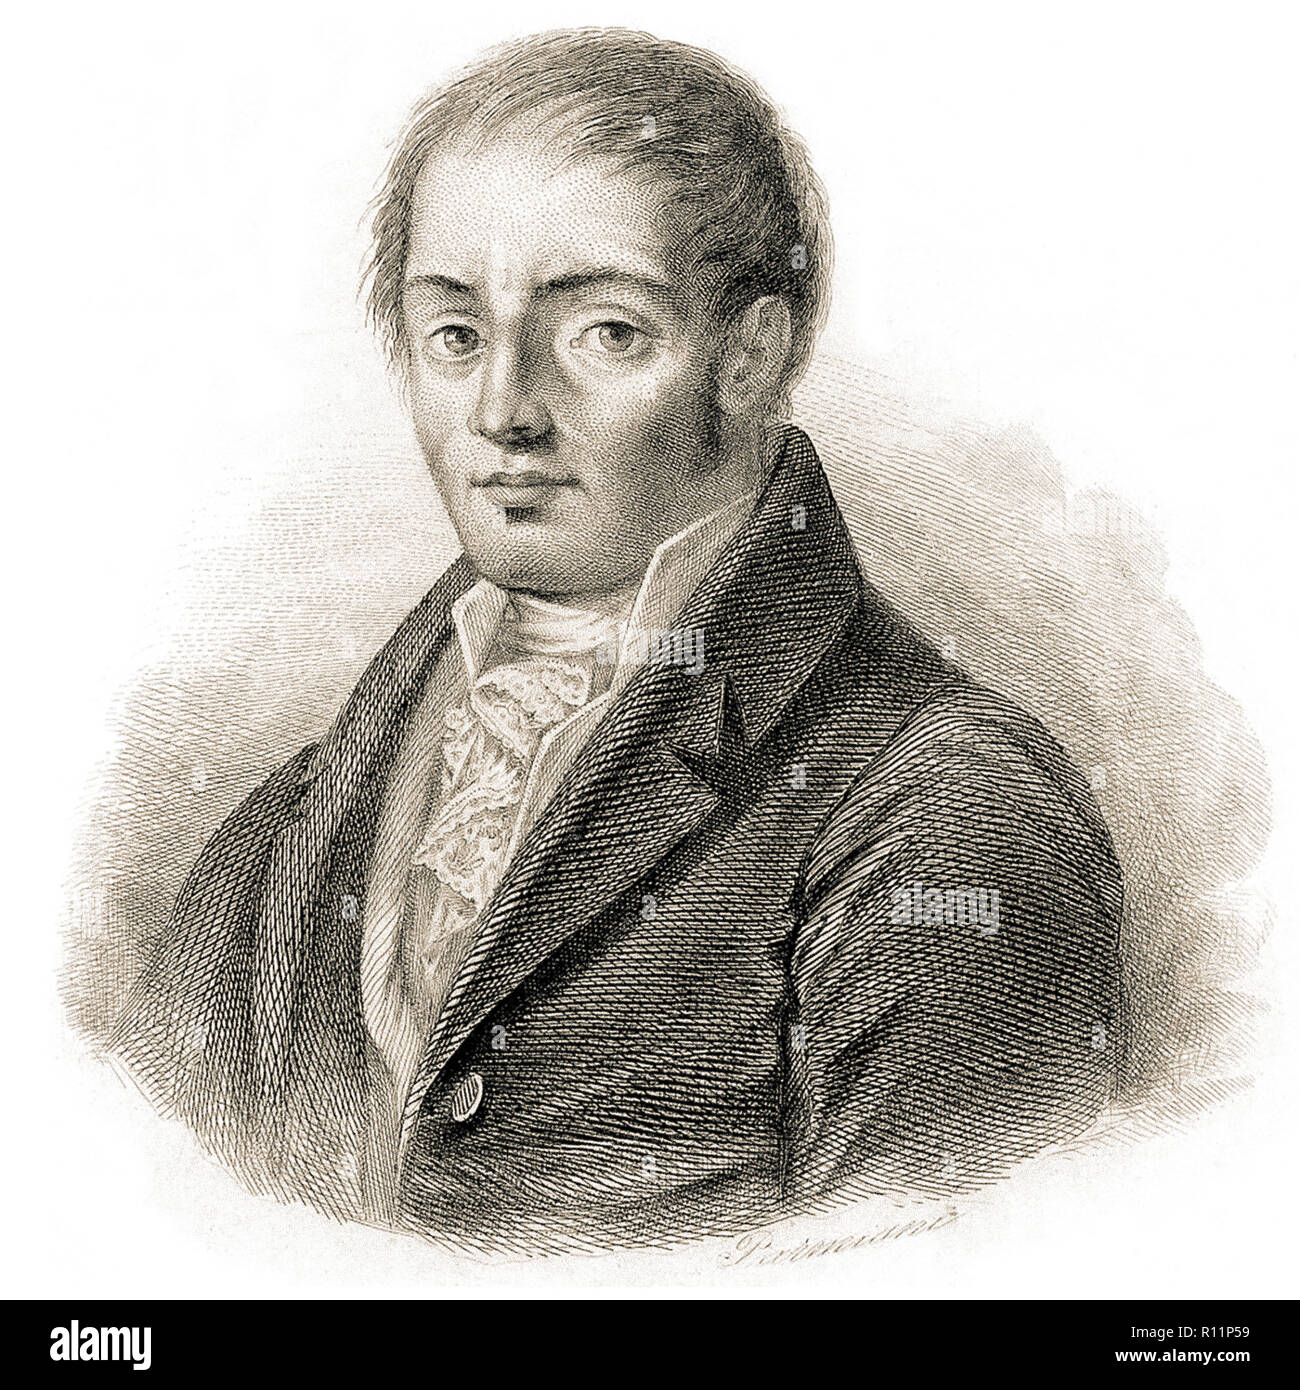 Francesco Mario Pagano, (Brienza, 8 décembre 1748 - Naples, 29 octobre 1799) était un juriste, philosophe, dramaturge et homme politique. Il a été l'un des plus grands représentants de l'italien l'Illumination et un précurseur du positivisme, Banque D'Images